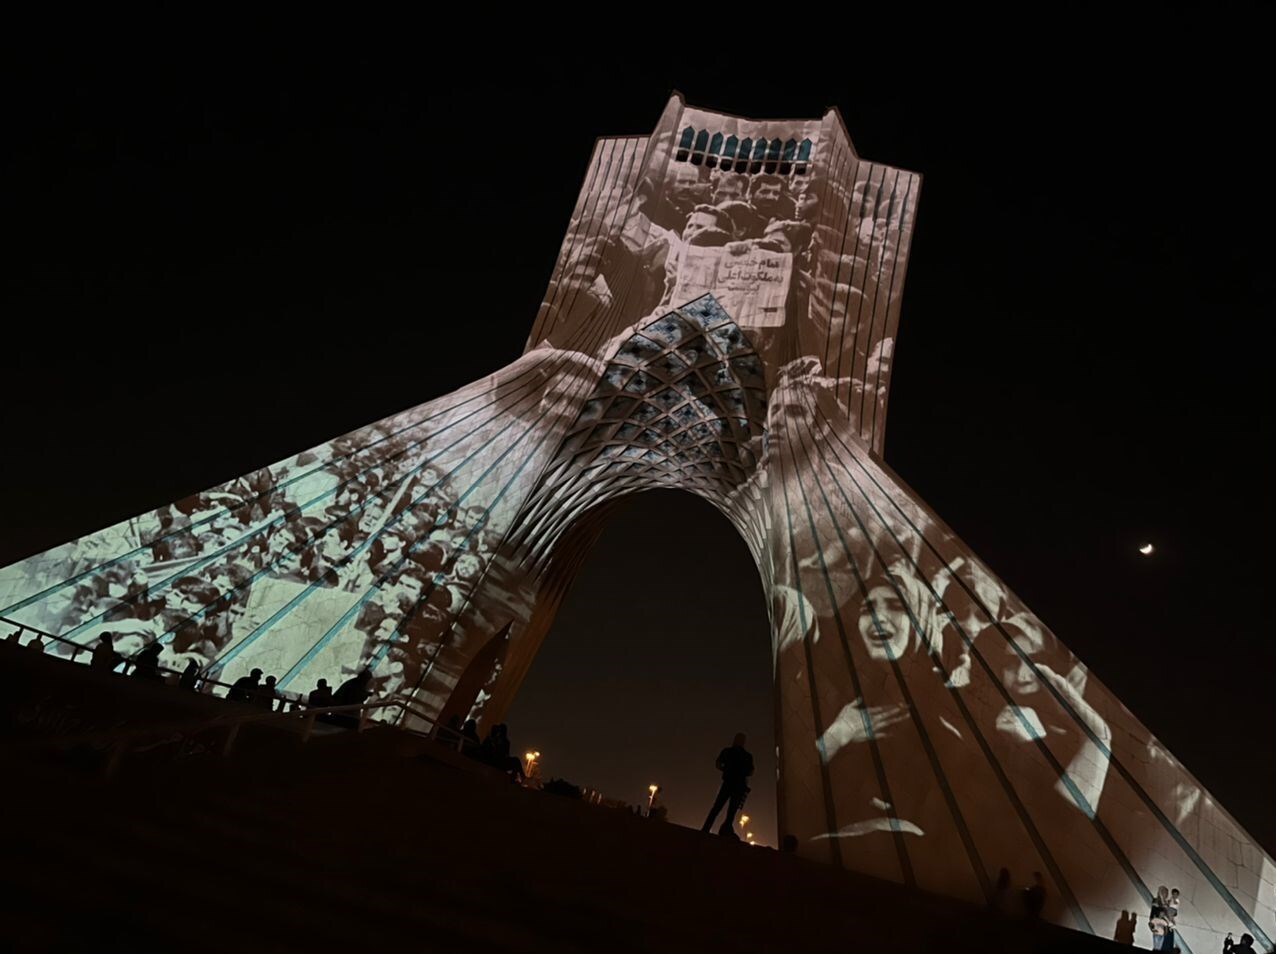 برج آزادی؛ میراث و هویت مدرن ایران